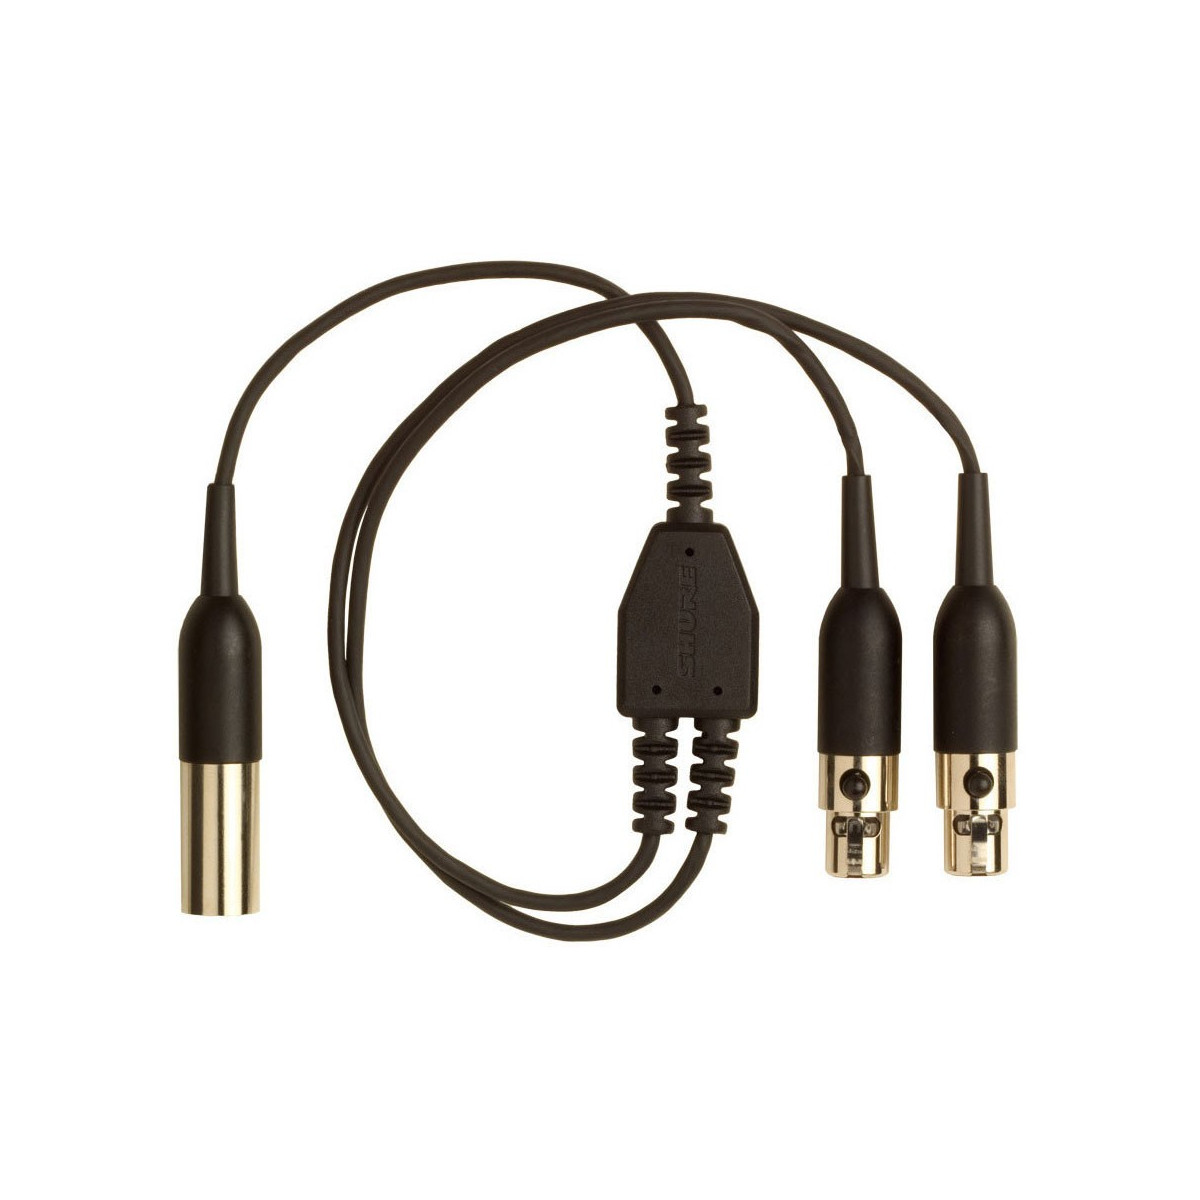 Cable en Y con conectores TA4F para un micro y dos petacas